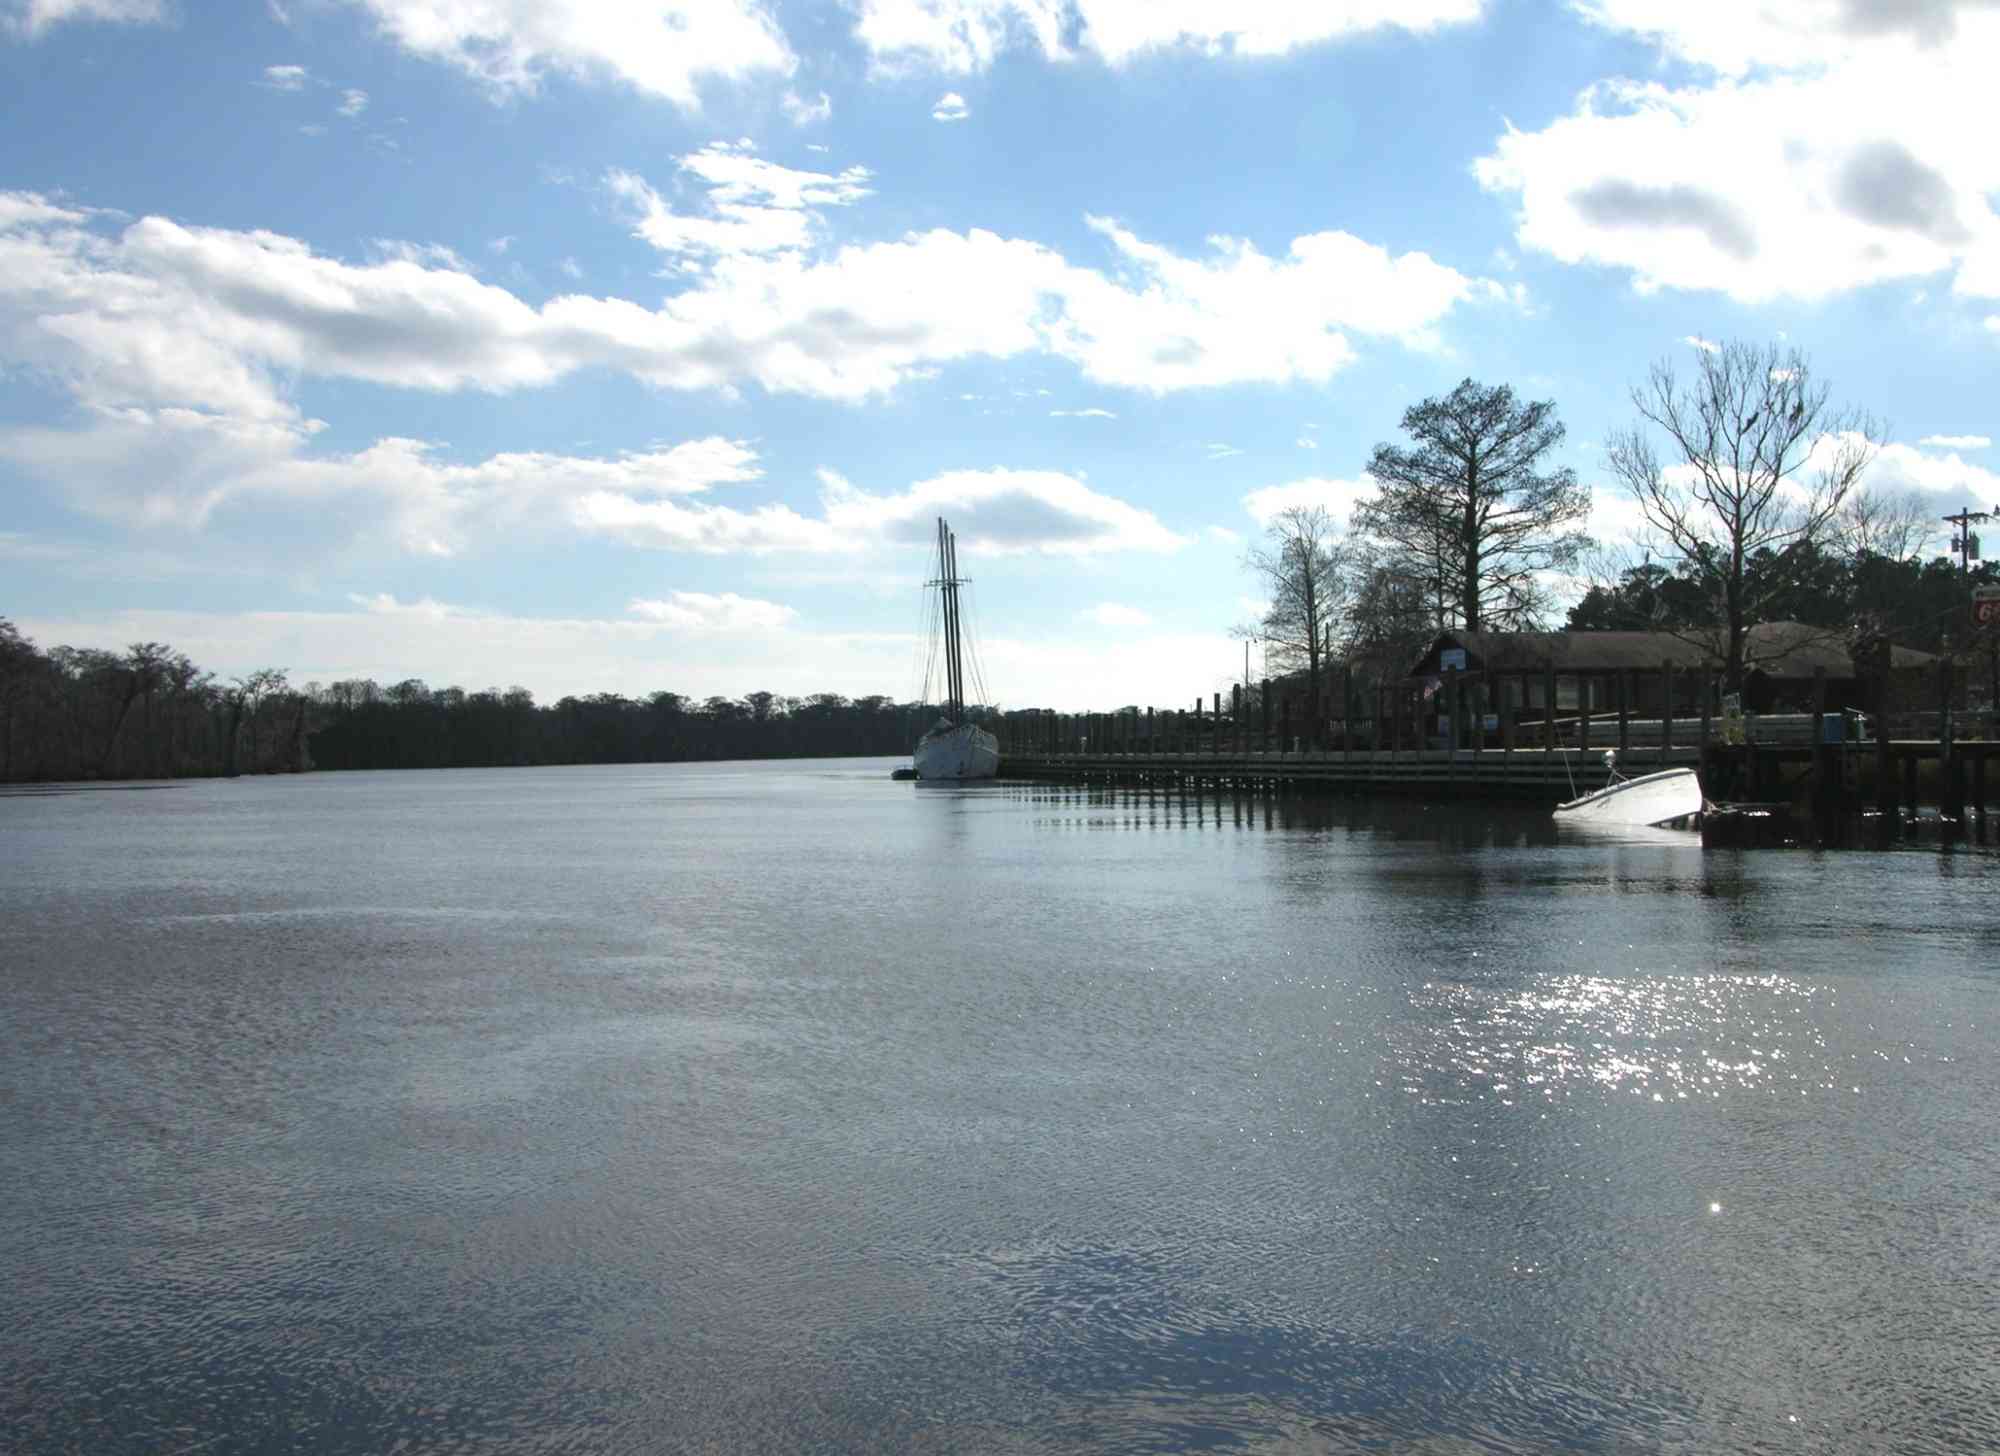 Waccamaw River in Bucksport, South Carolina